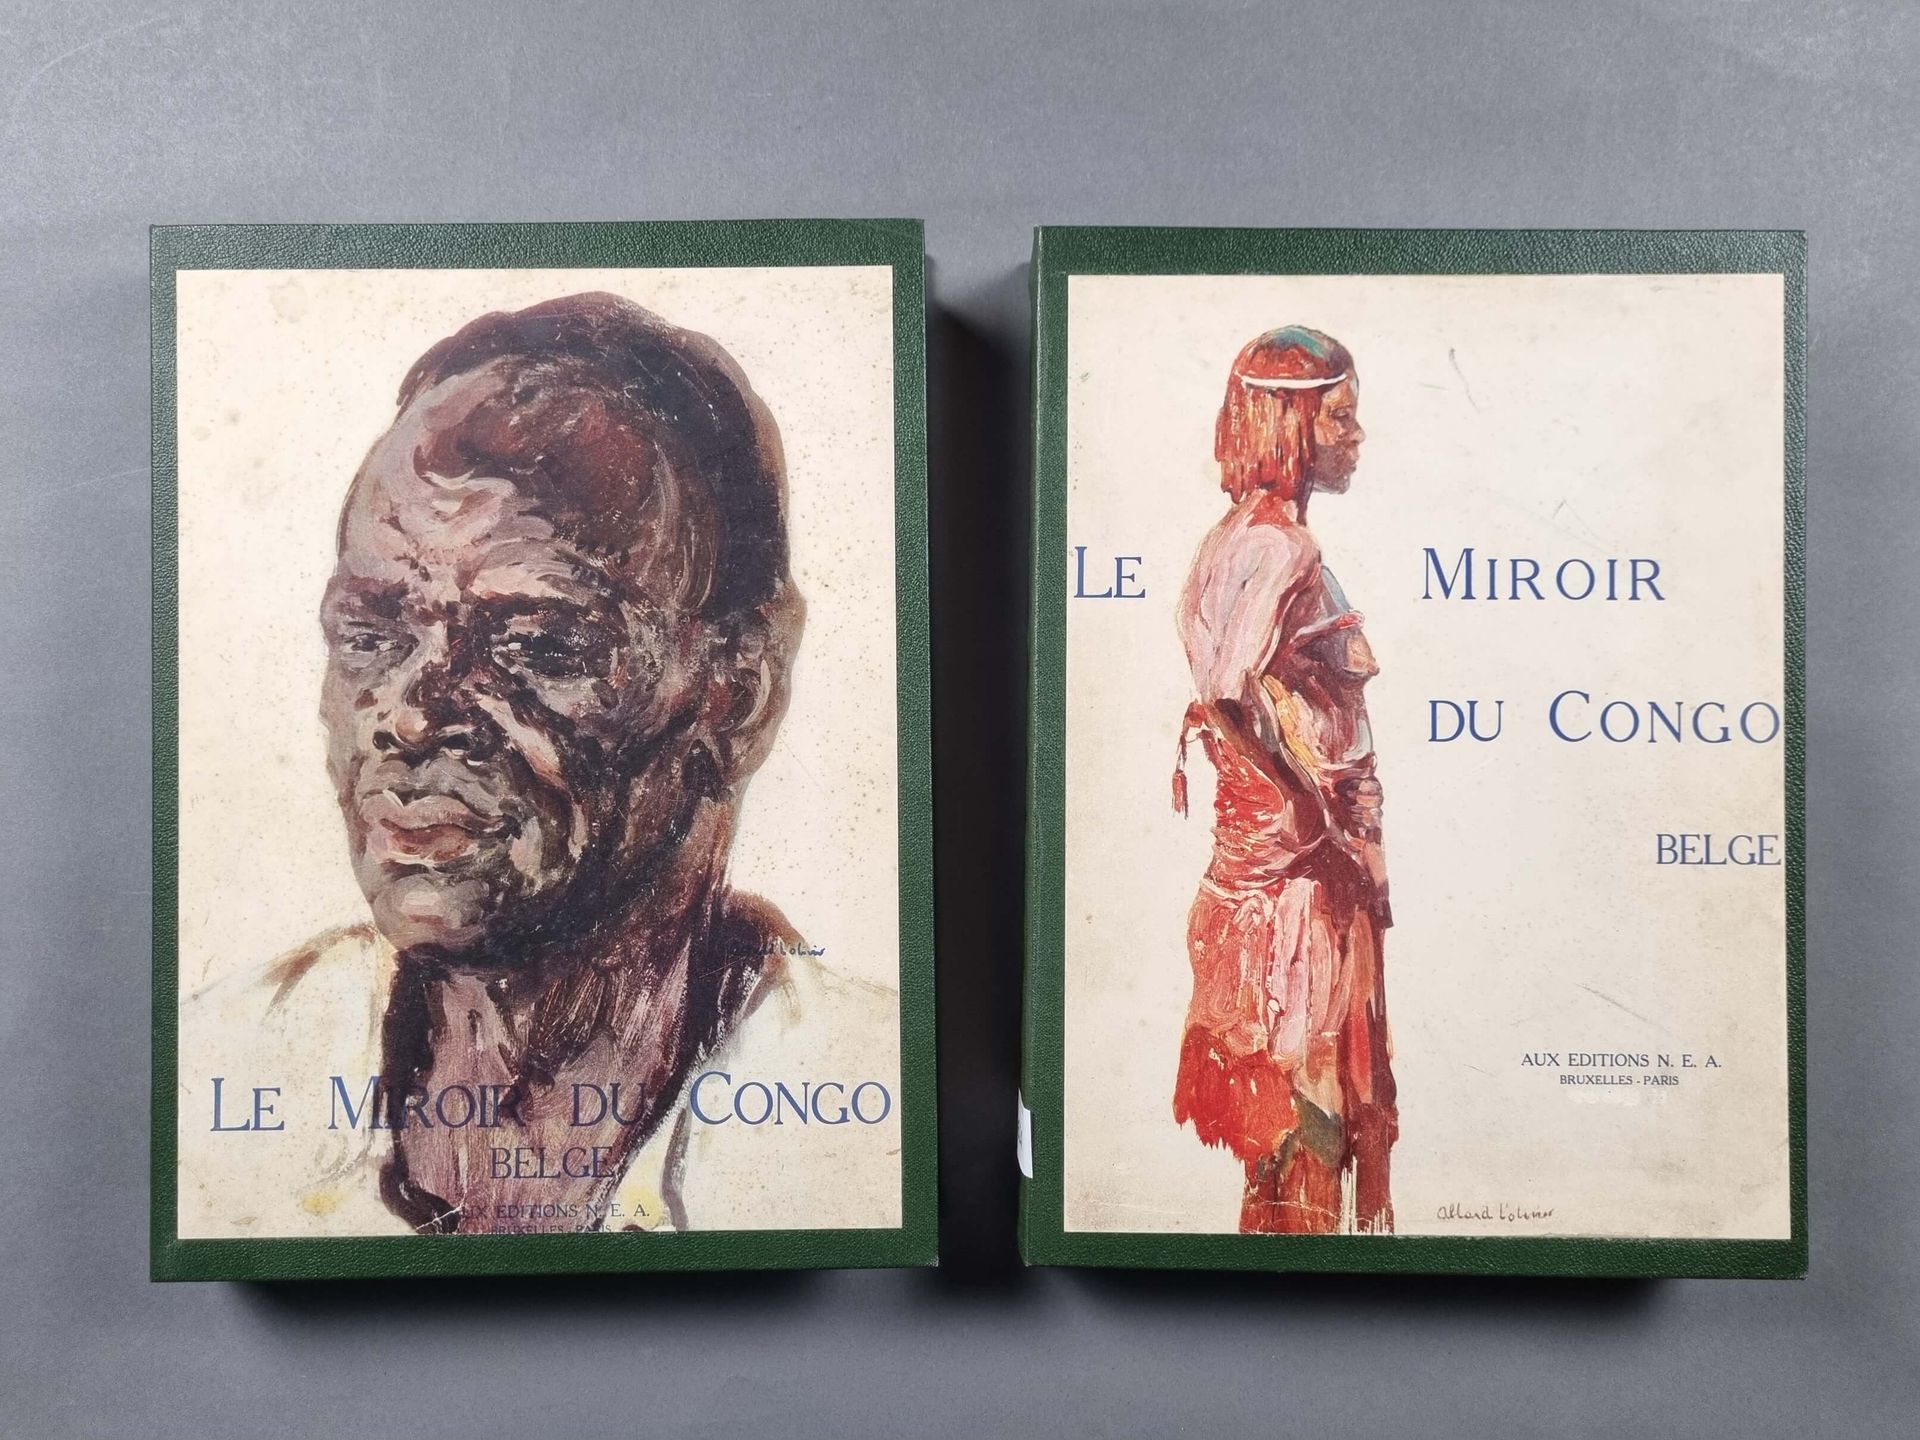 DAYE (Pierre) et al. : Le miroir du Congo Belge. Tomes I et II. Editions N.E.A. &hellip;